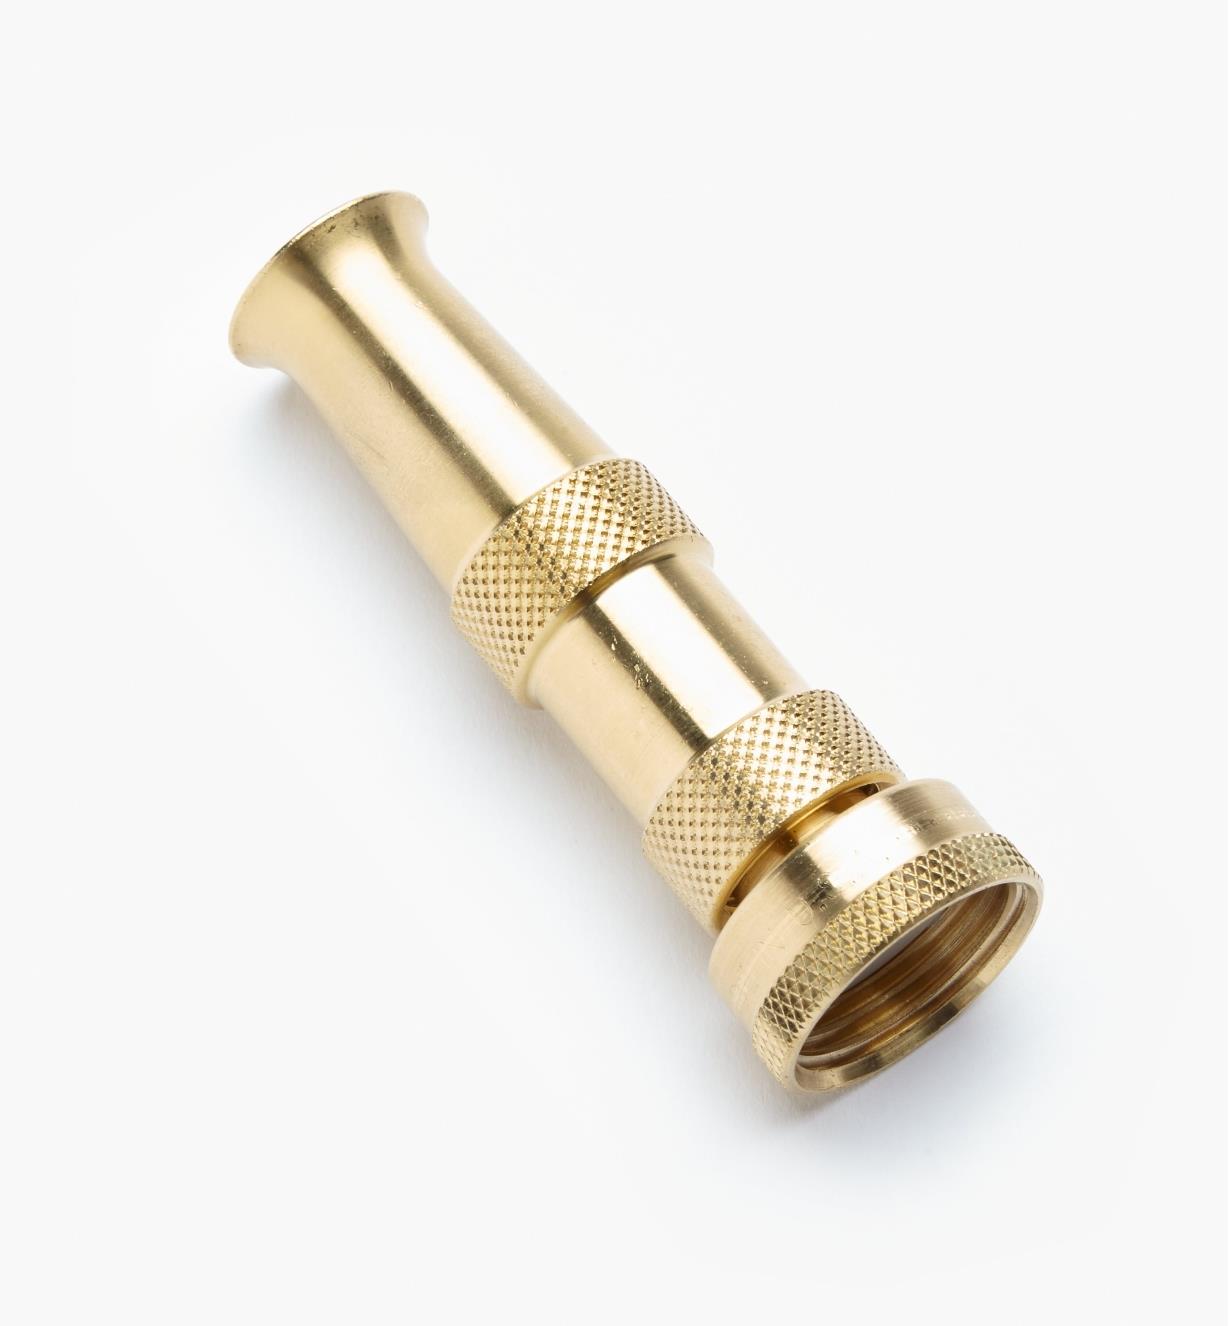 AL902 - Brass Hose Nozzle